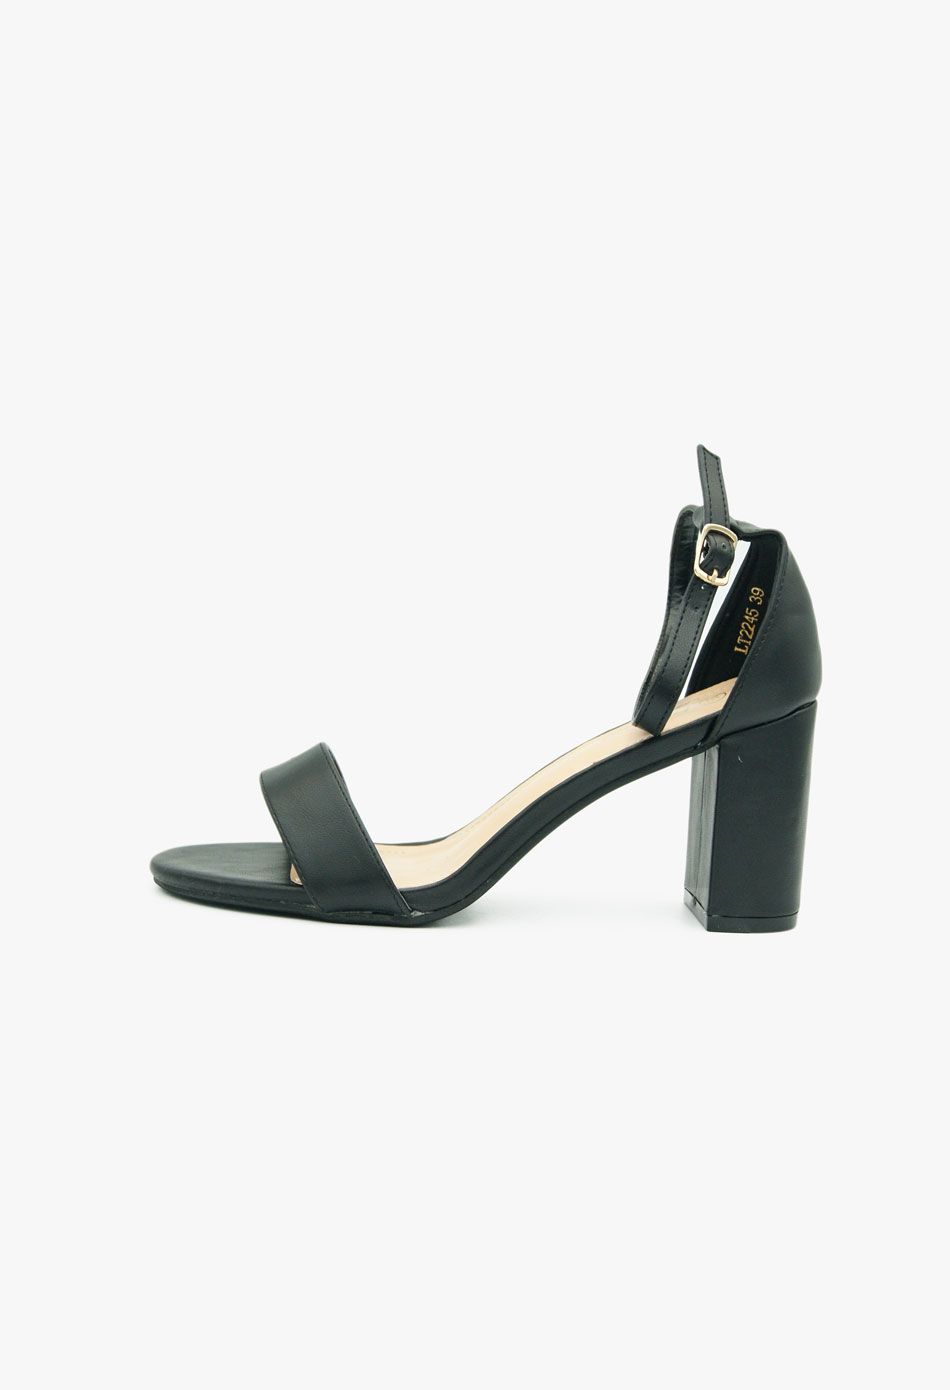 Πέδιλα με χοντρό χαμηλο τακούνι μαύρο / LT2245-black Ανοιχτά Παπούτσια joya.gr